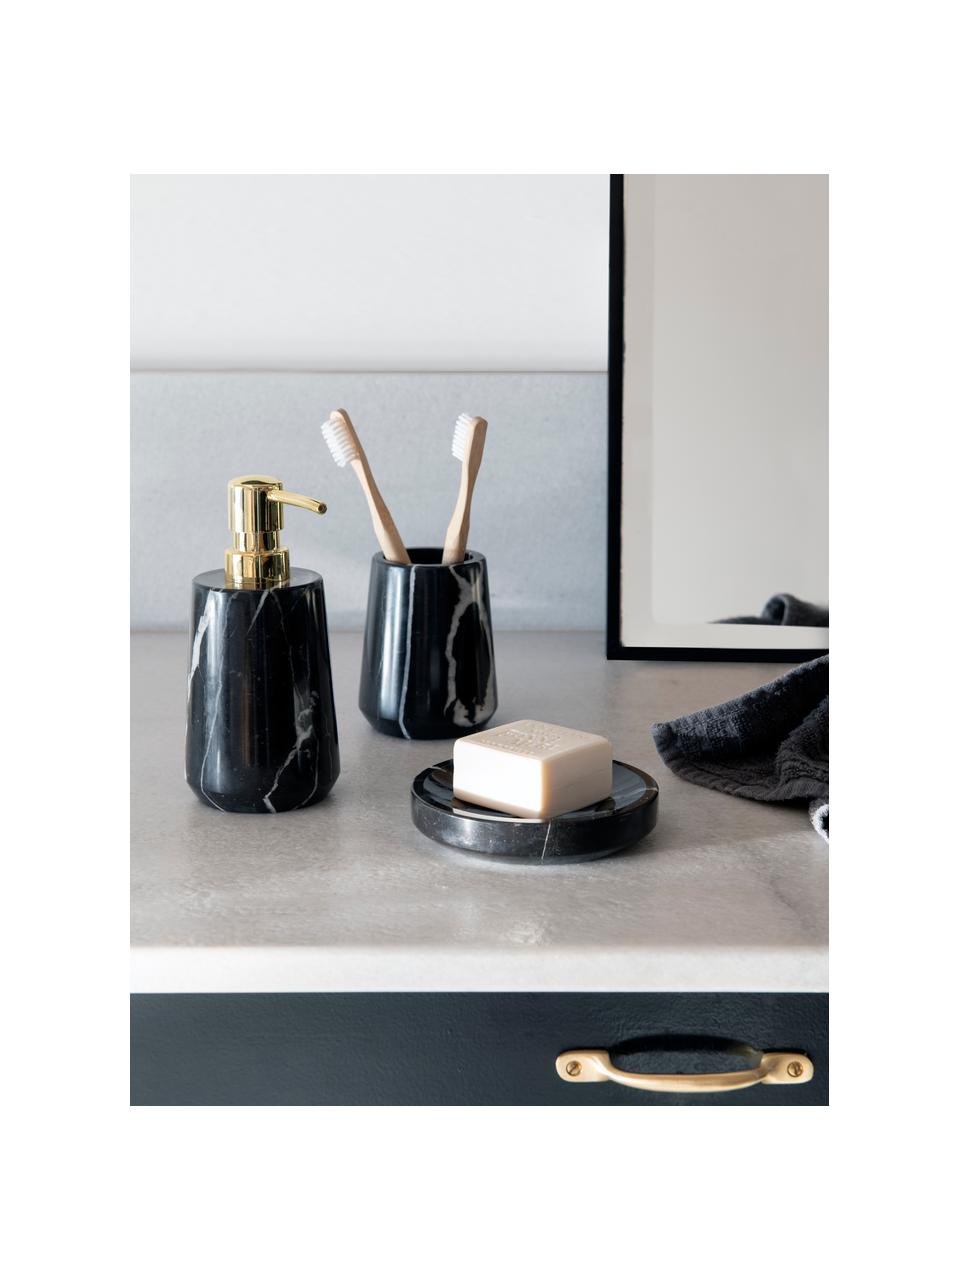 Marmor-Seifenspender Lux, Behälter: Marmor, Pumpkopf: Kunststoff, Schwarz, marmoriert, Goldfarben, Ø 8 x H 17 cm